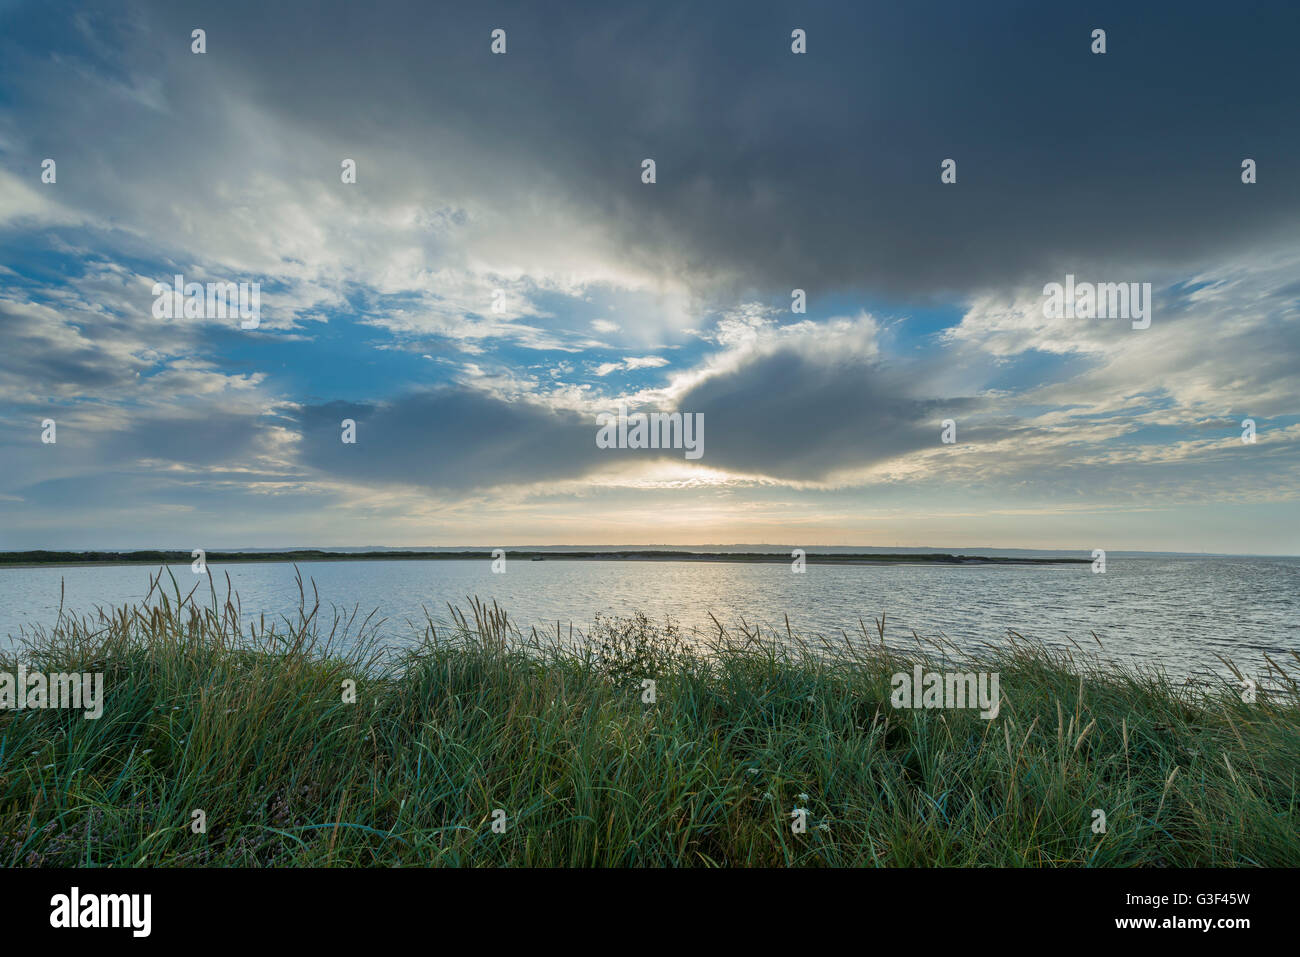 Sulla spiaggia di Baia Mare, Krig Vig, il tuo parco nazionale, Agger, Nord dello Jutland, Danimarca Foto Stock